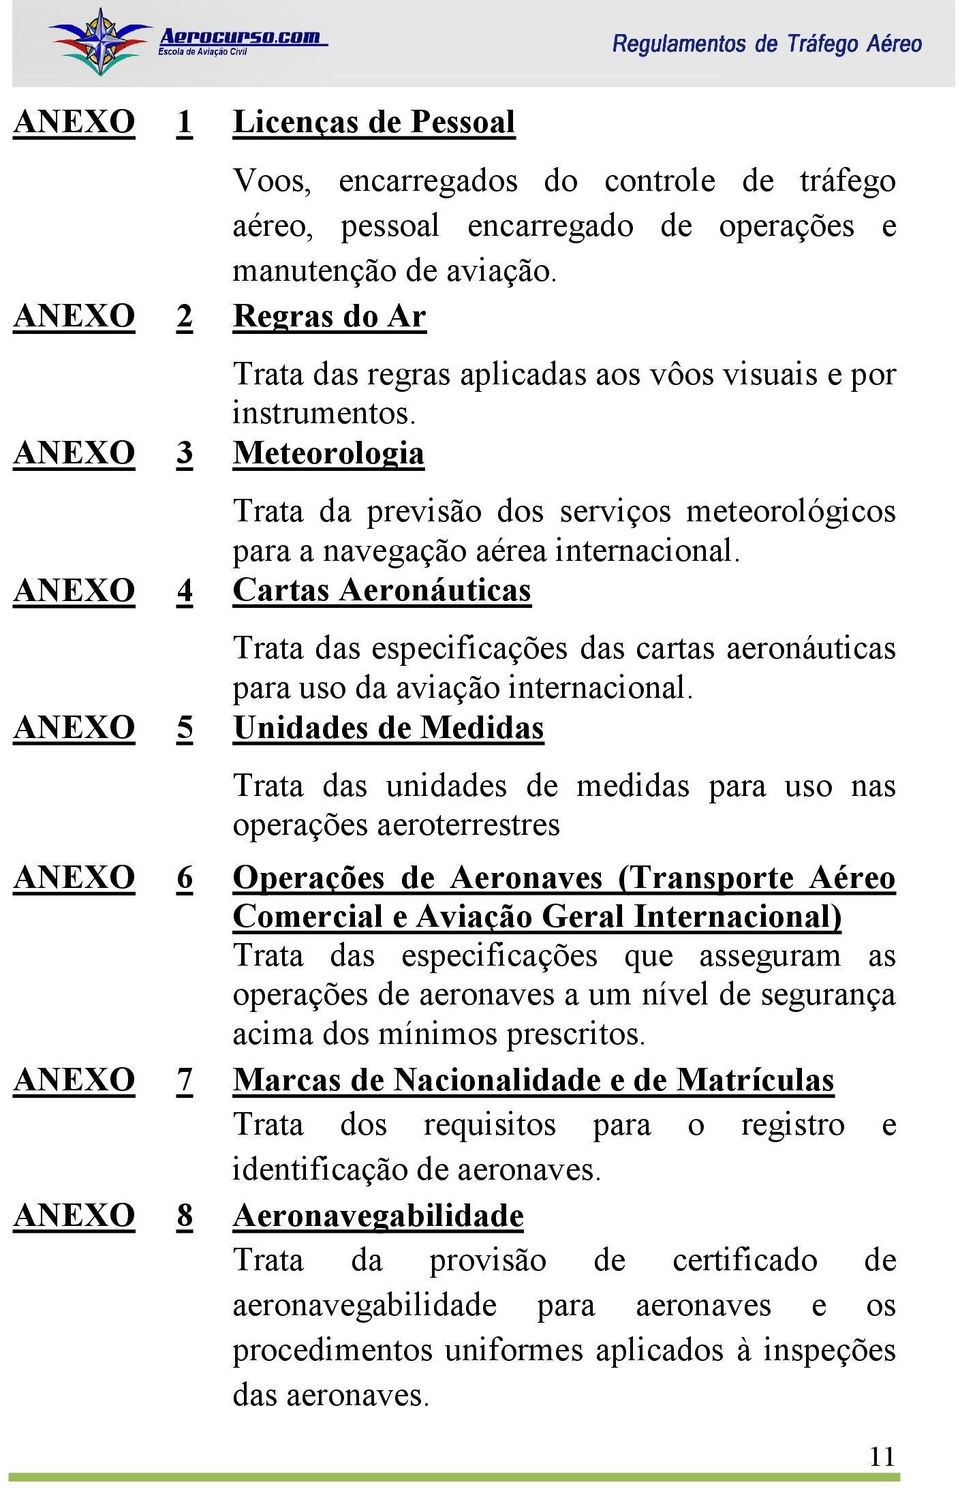 ANEXO 4 Cartas Aeronáuticas Trata das especificações das cartas aeronáuticas para uso da aviação internacional.